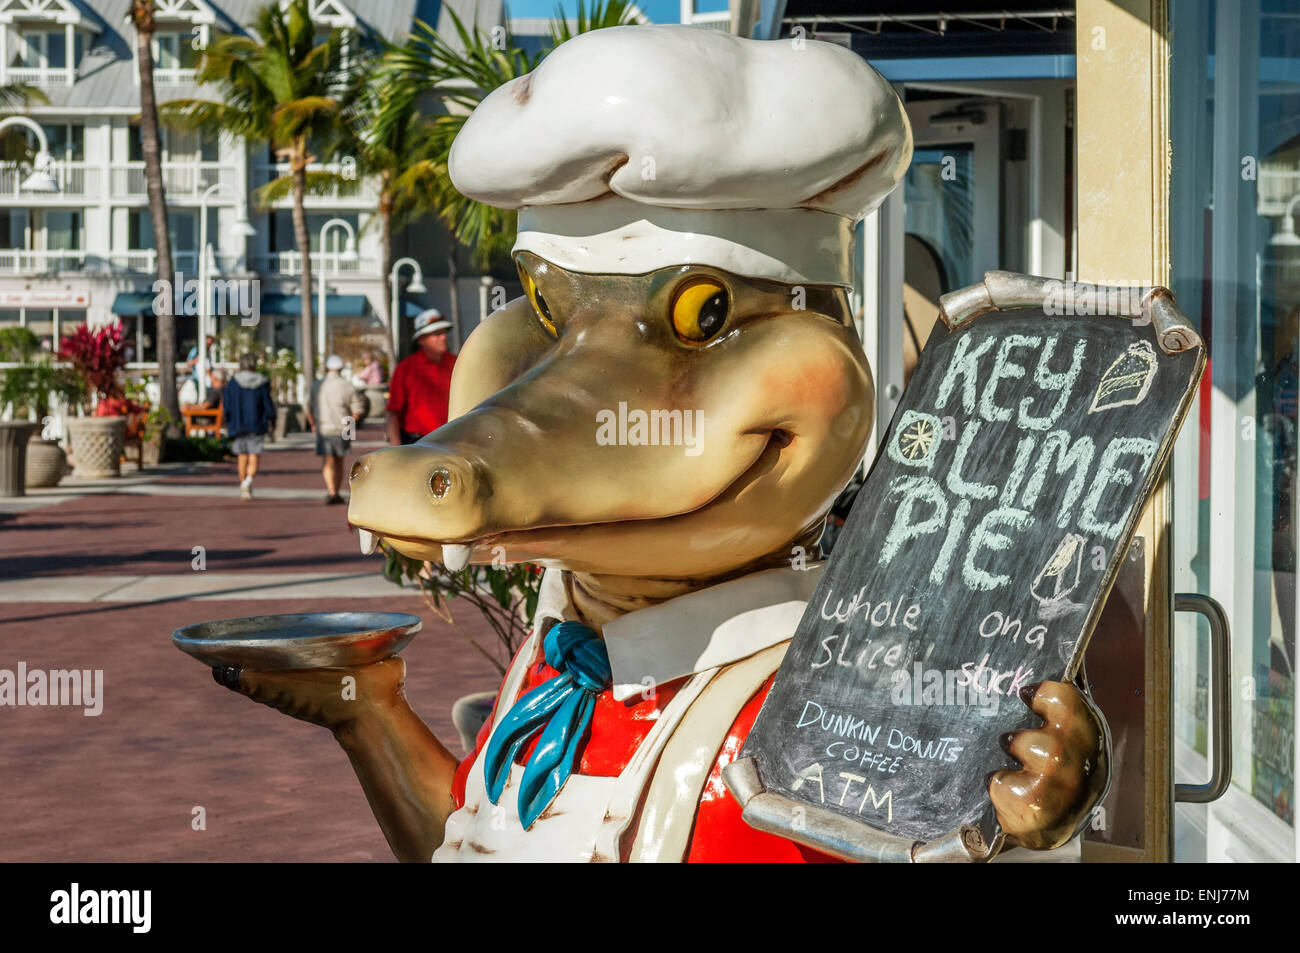 Le chef Joe Gator alligator statue dans la publicité de Key West Key Lime Pie. Key West.Florida Keys. USA Banque D'Images